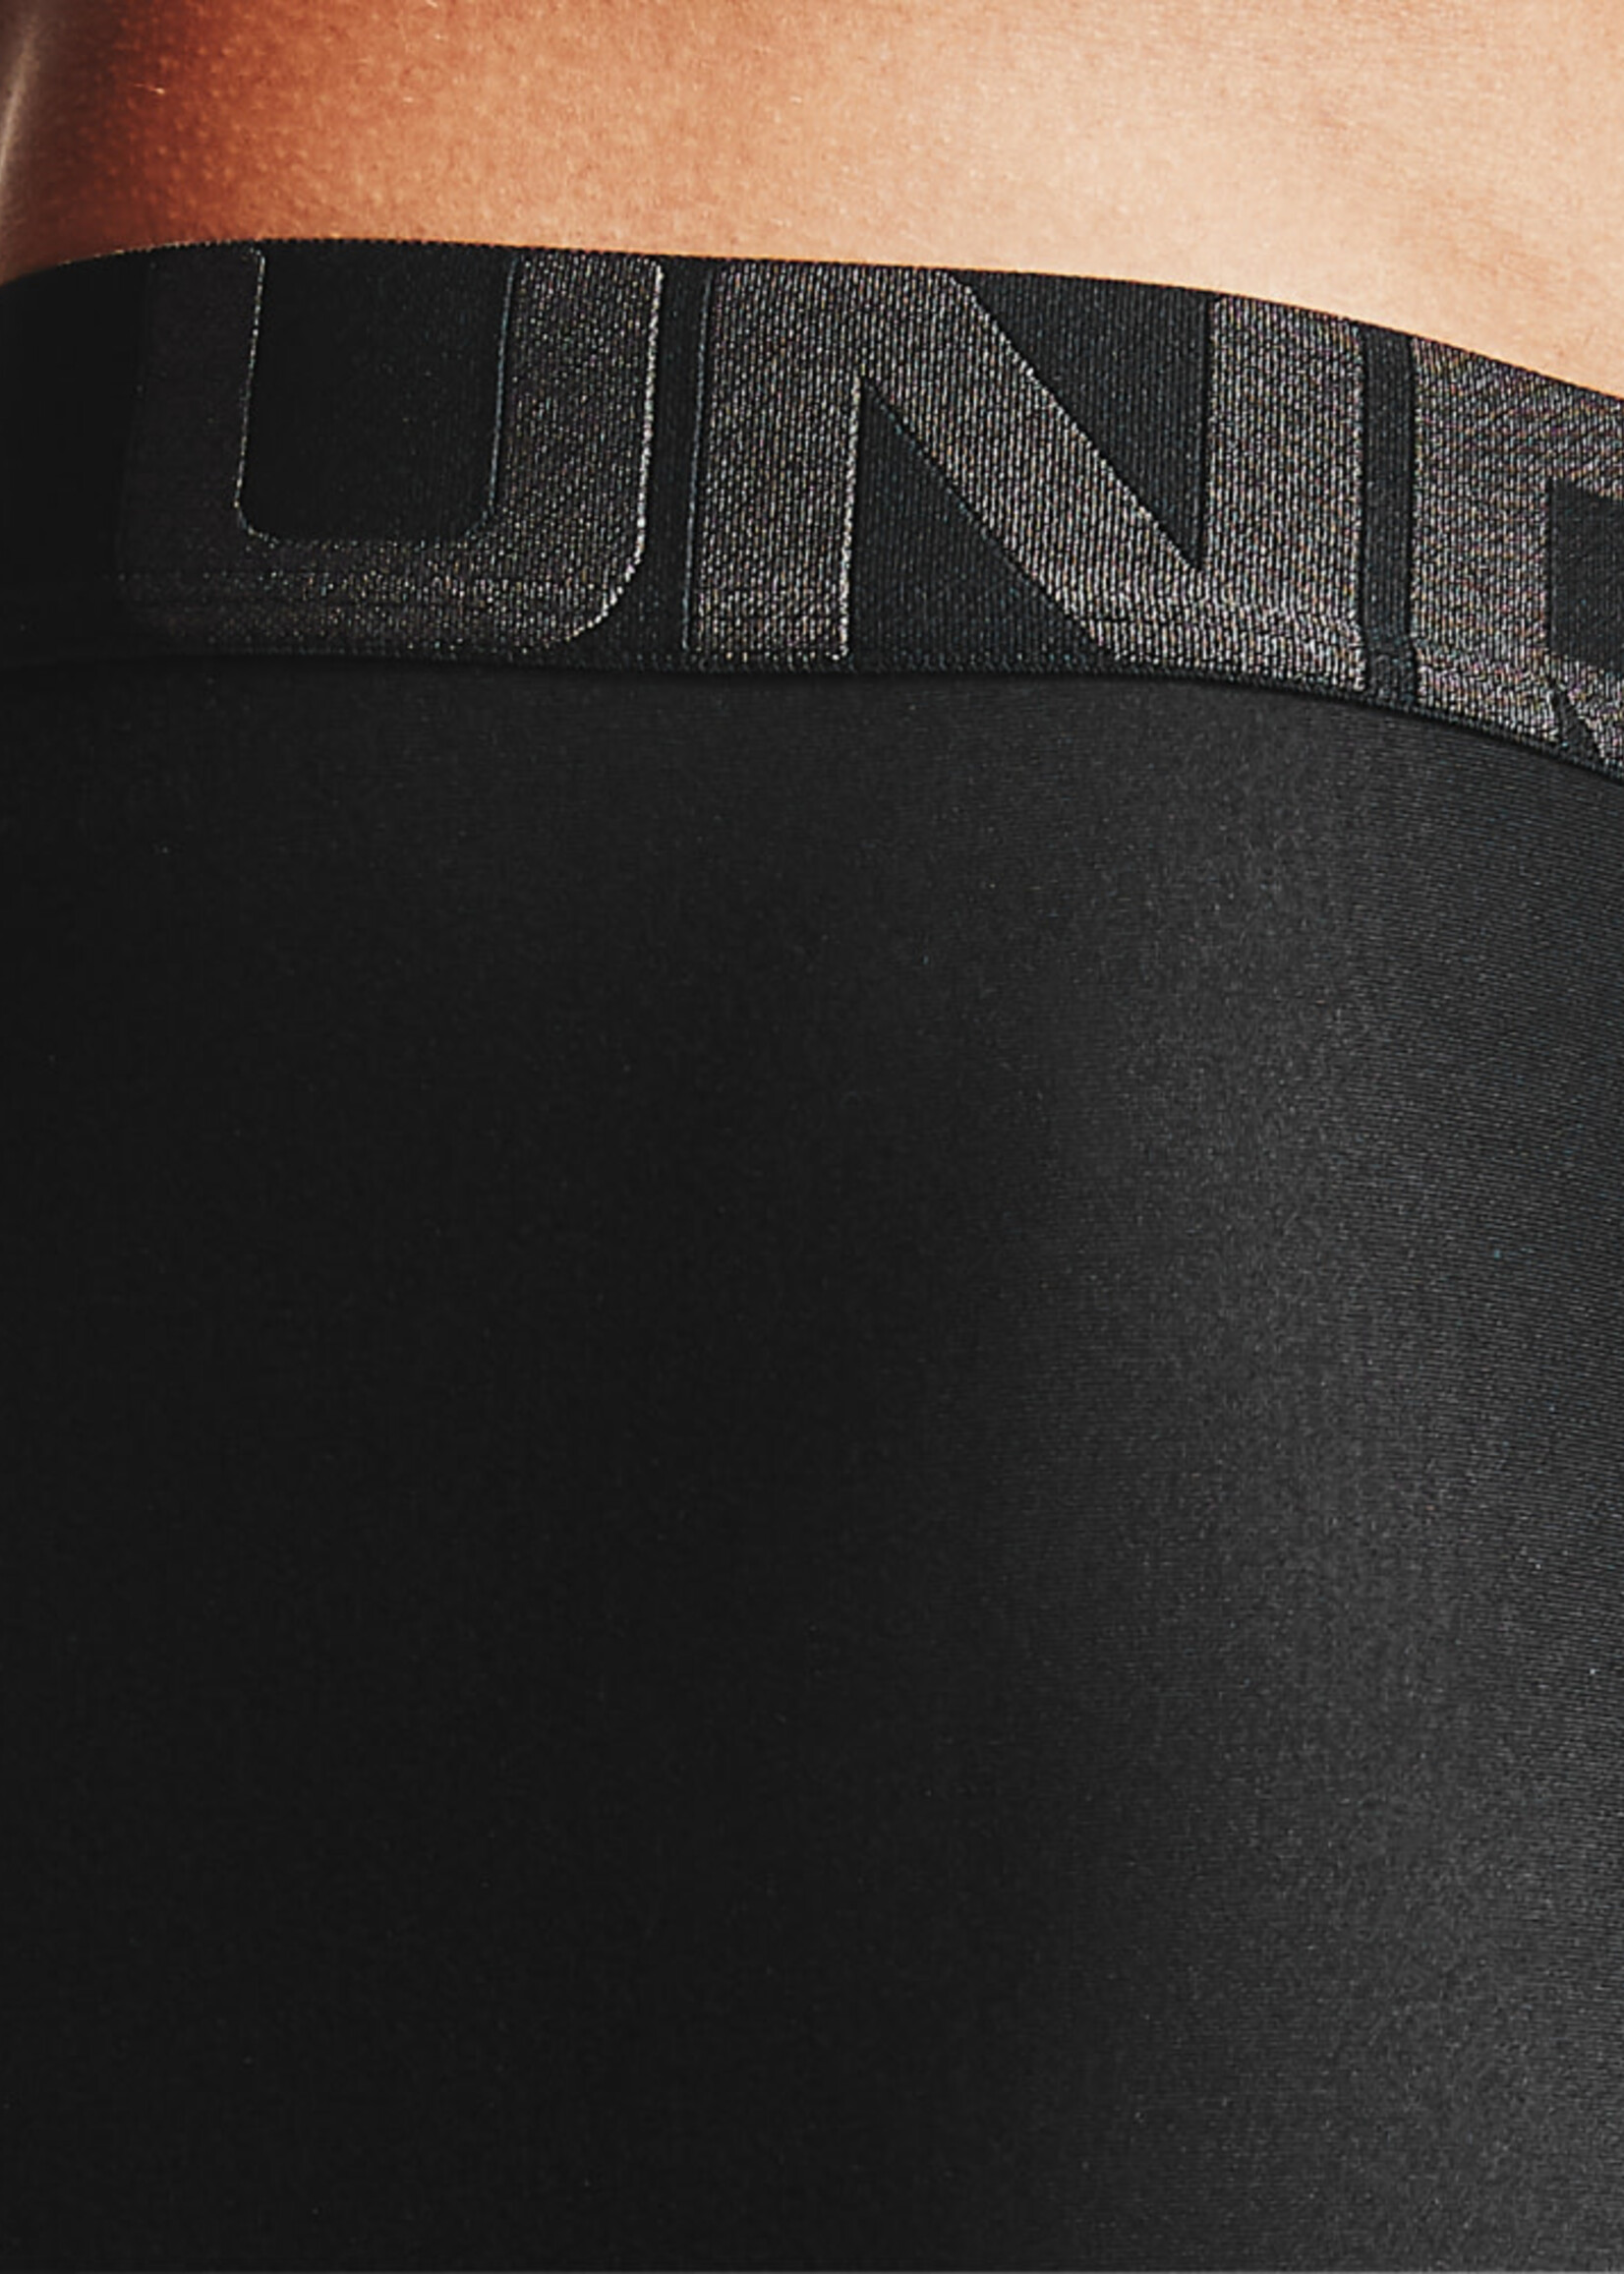  UA Tech Mesh 6in 2 Pack, Black - men's underwear